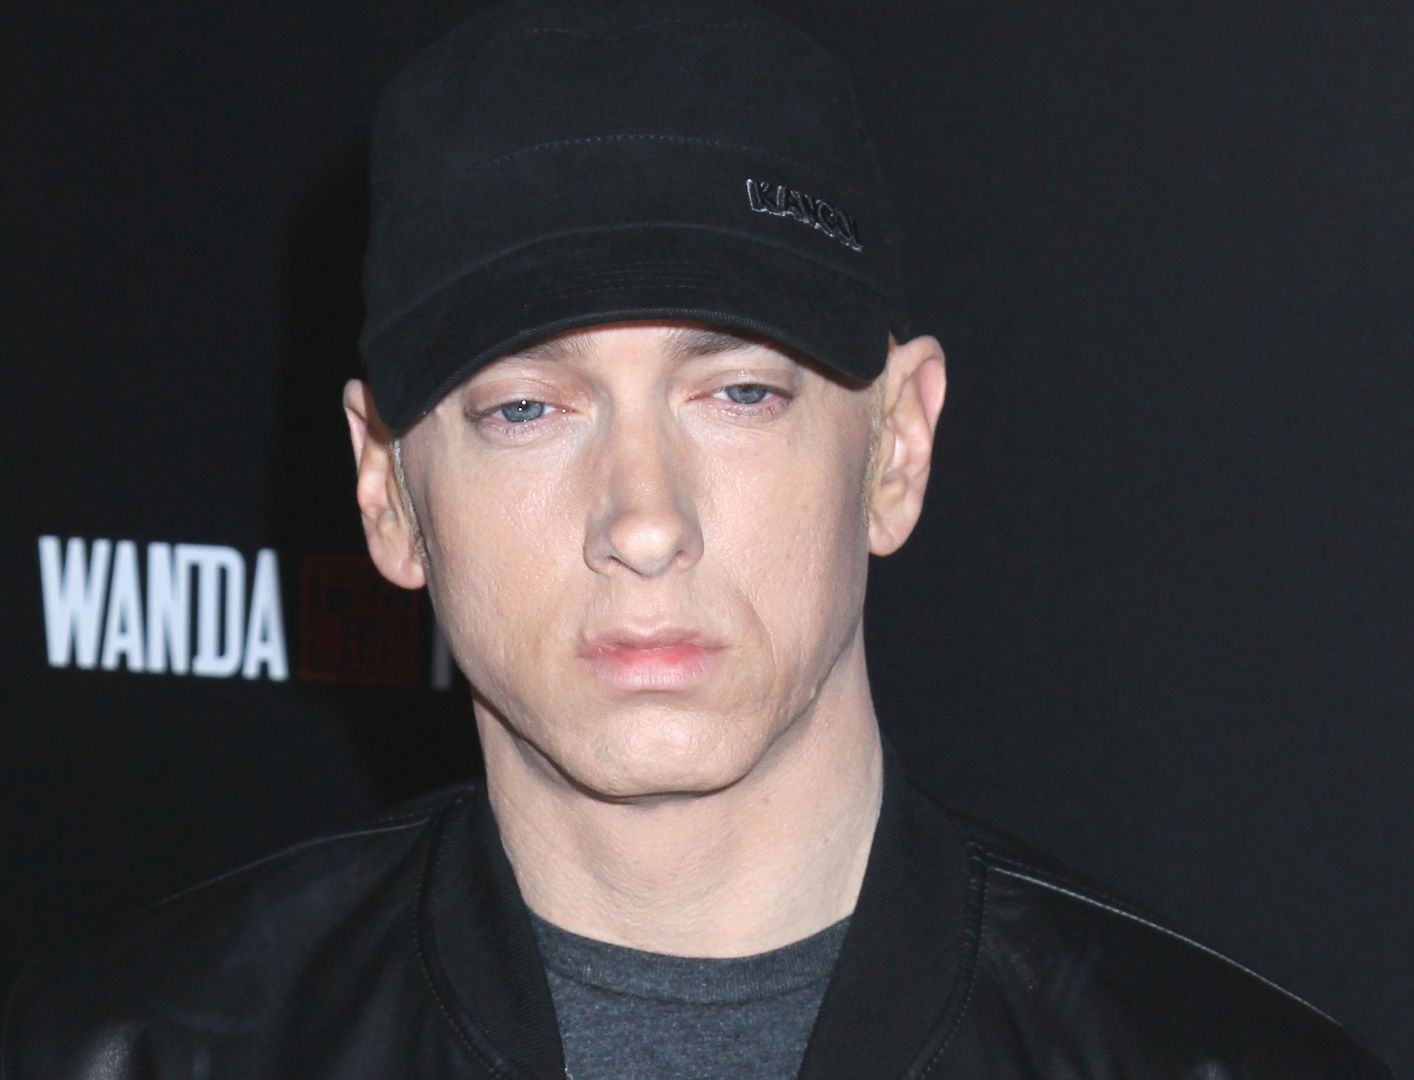 Eminem miał zginąć we własnym domu. Nowe fakty ws. włamania